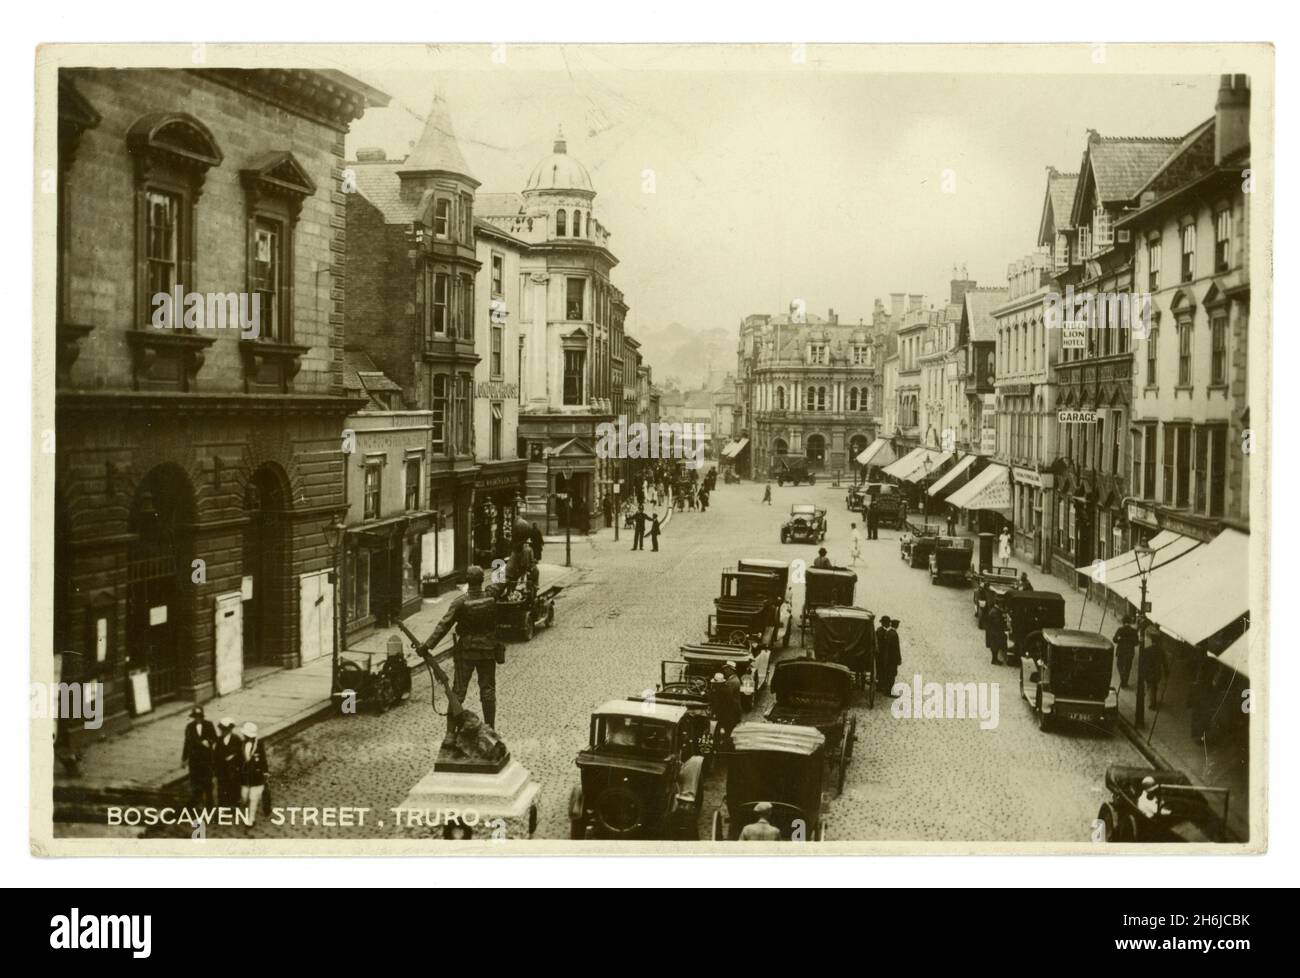 Originalpostkarte aus den frühen 1920er Jahren von Boscawen Street Truro, Cornwall, mit Gedenkstätte zum 1. Weltkrieg, Geschäften, dem Red Lion Hotel (das abgerissen wurde, nachdem ein Lastwagen es getroffen hatte) Autos. Fotografiert von den Opie Studios aus der Coinage Hall. Stockfoto